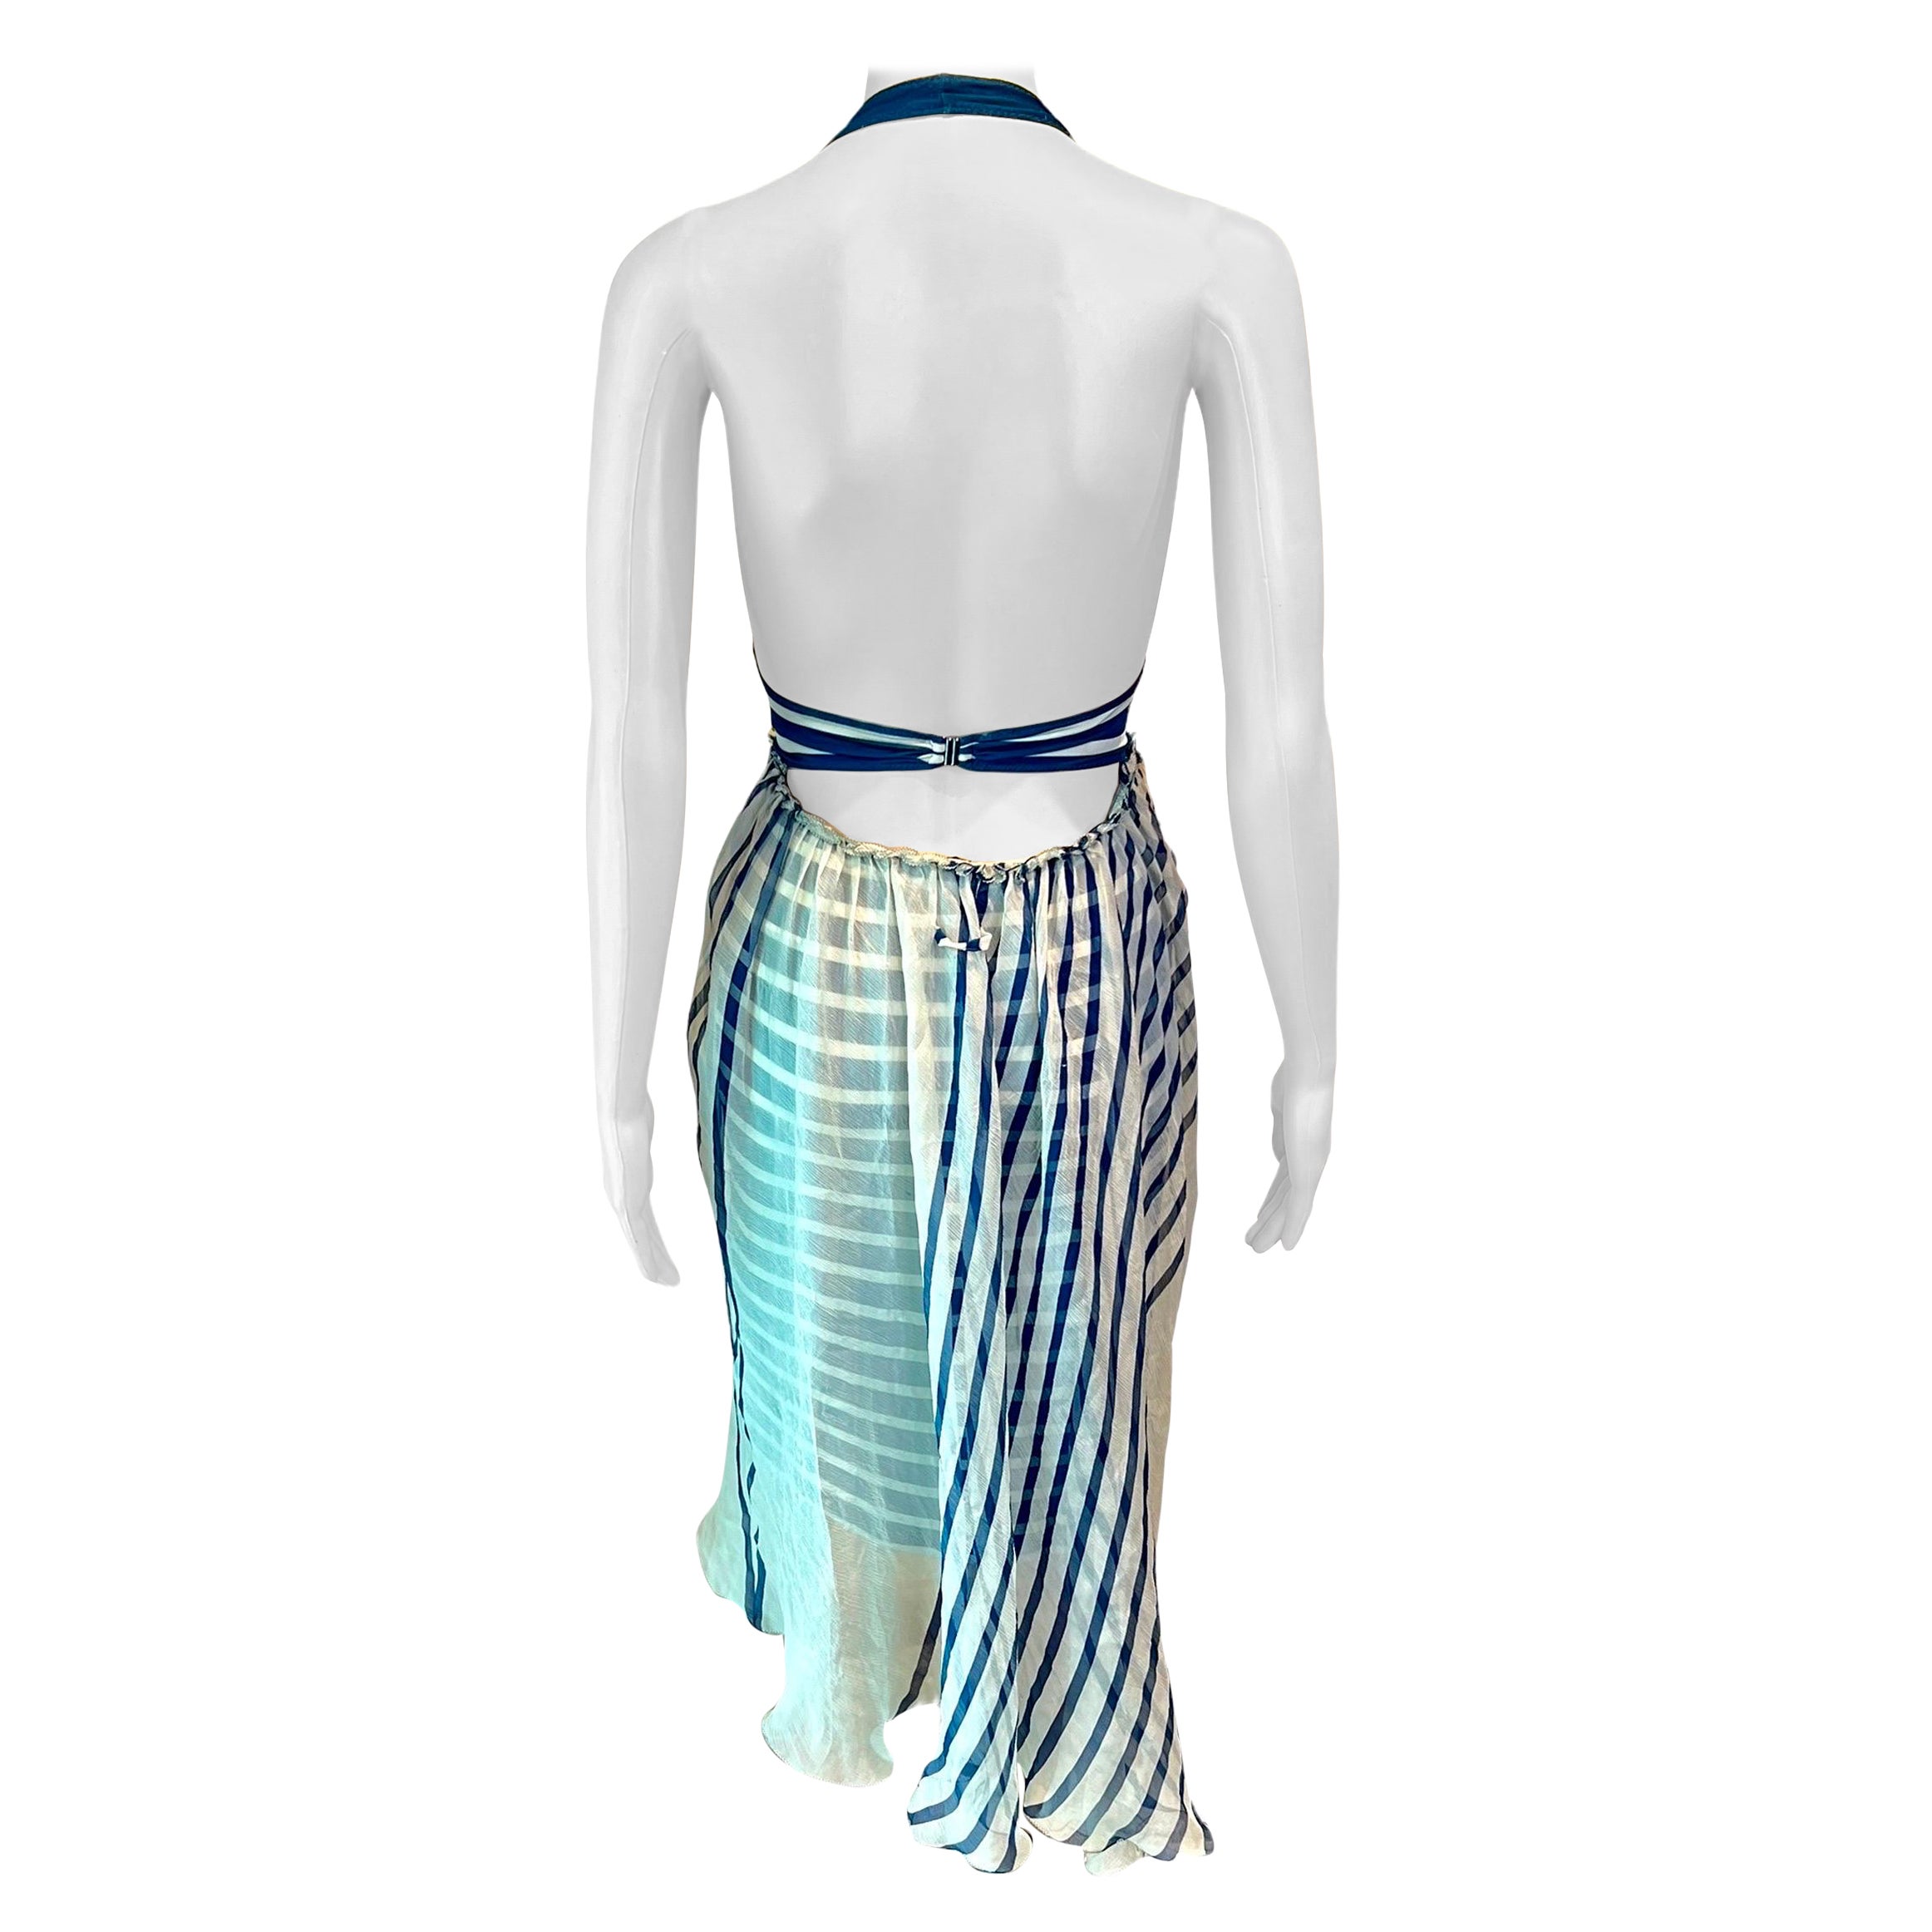 Jean Paul Gaultier Soleil S/S 2001 Gestreiftes Kleid mit Rückenausschnitt in Elfenbein und Marineblau 